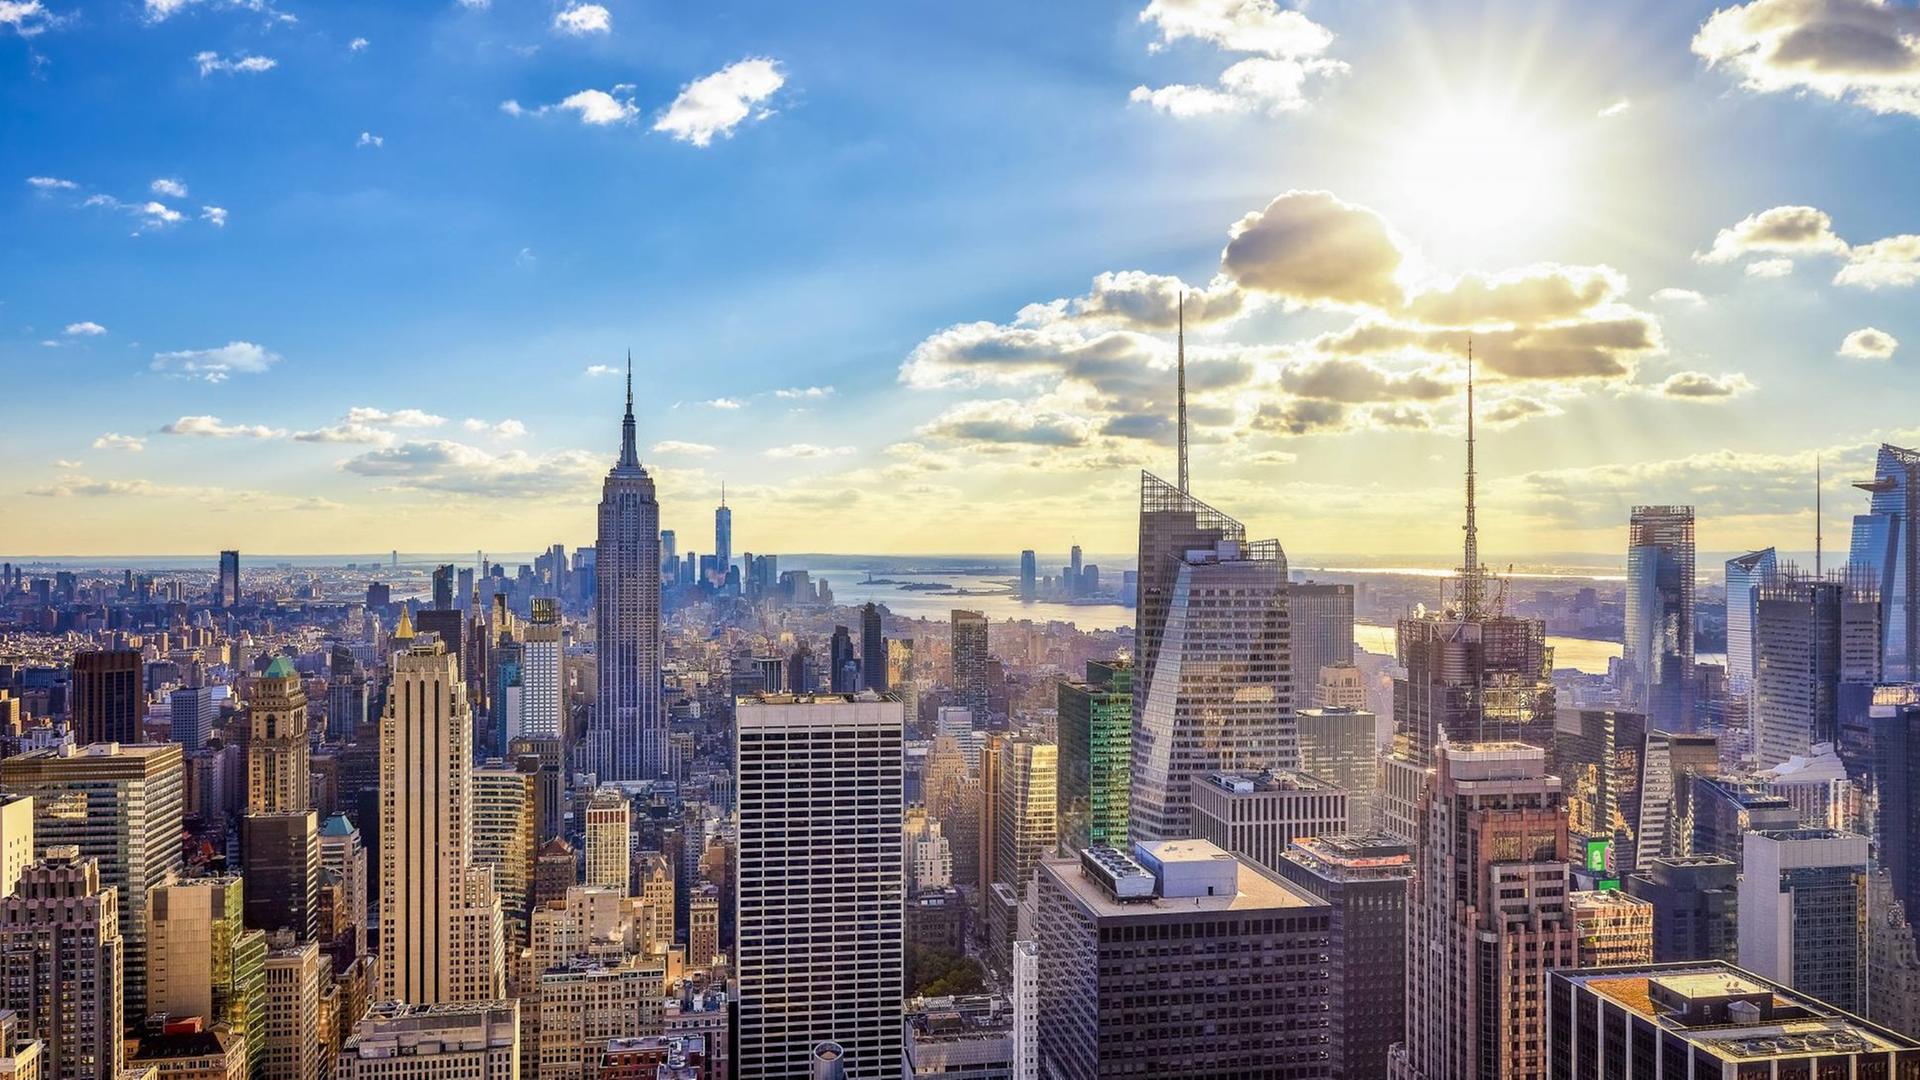 Gläsernen Hochhauskonstruktionen bilden die Skyline von New York und bilden eine Teil des Panoramas der Stadt im Gegenlicht der Sonne am Himmel.